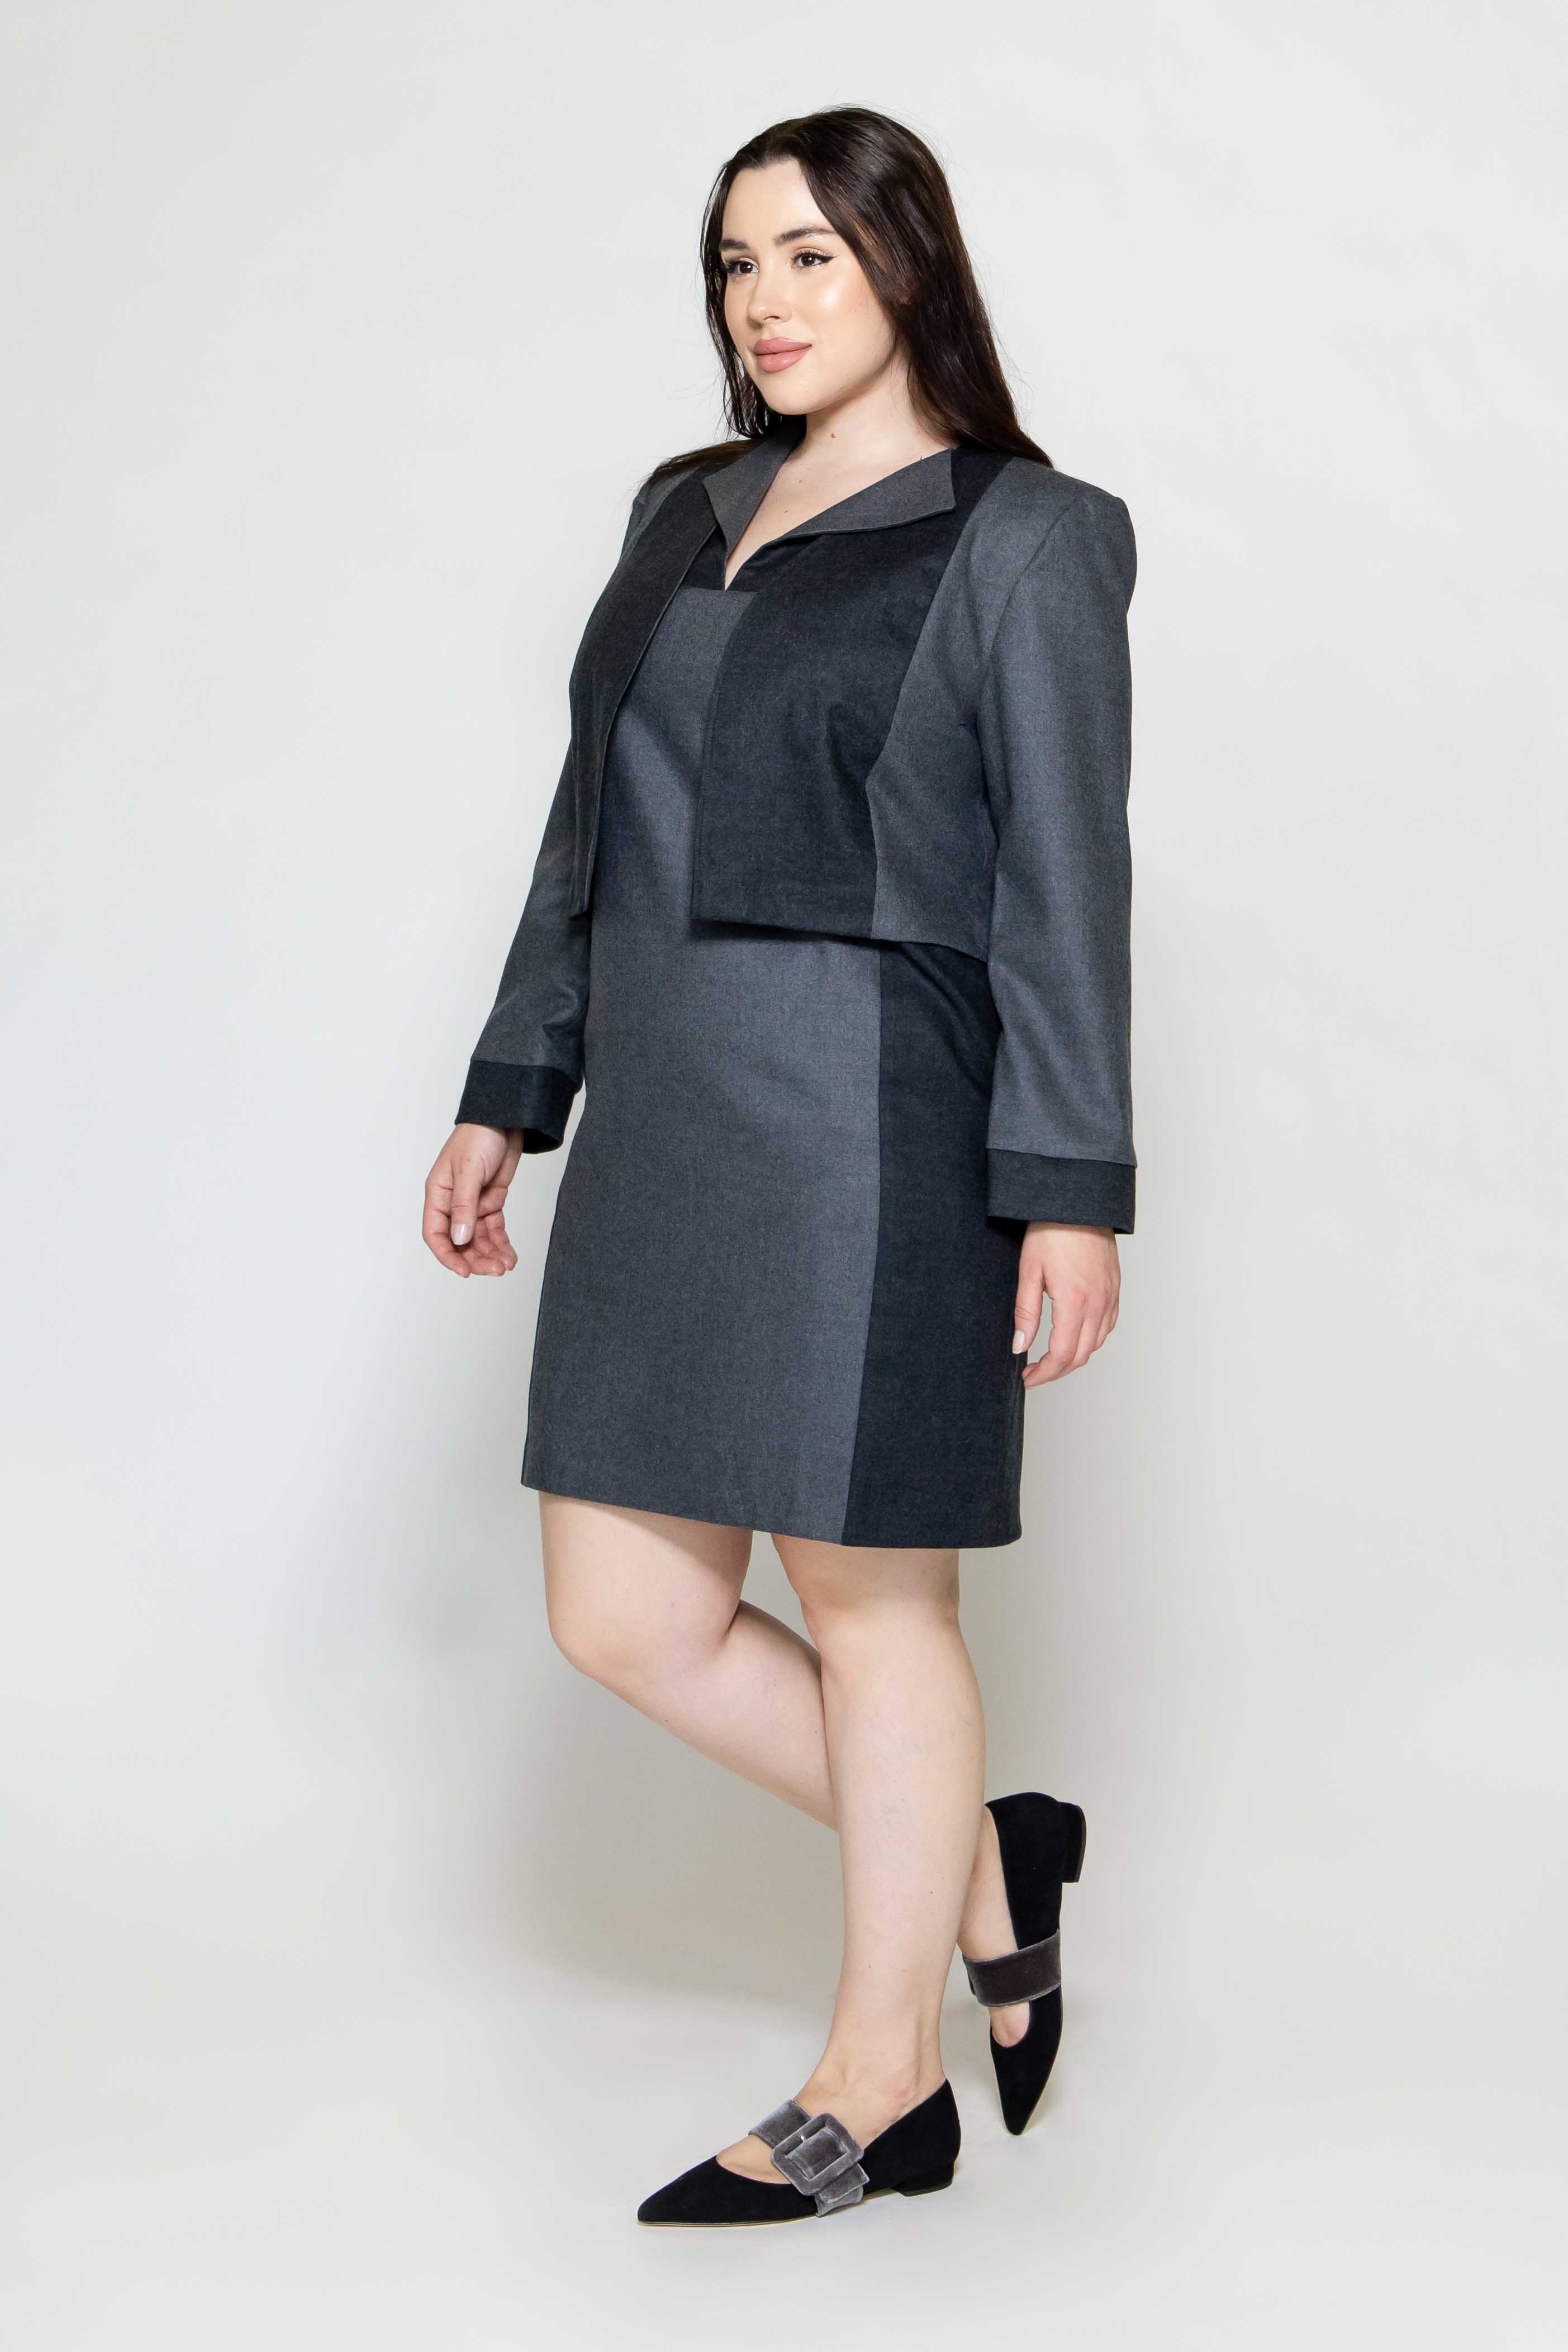 Sara Sabella 2-PIECE SET Plus Size Pantheon Grey Wool Dress & Jacket Set 